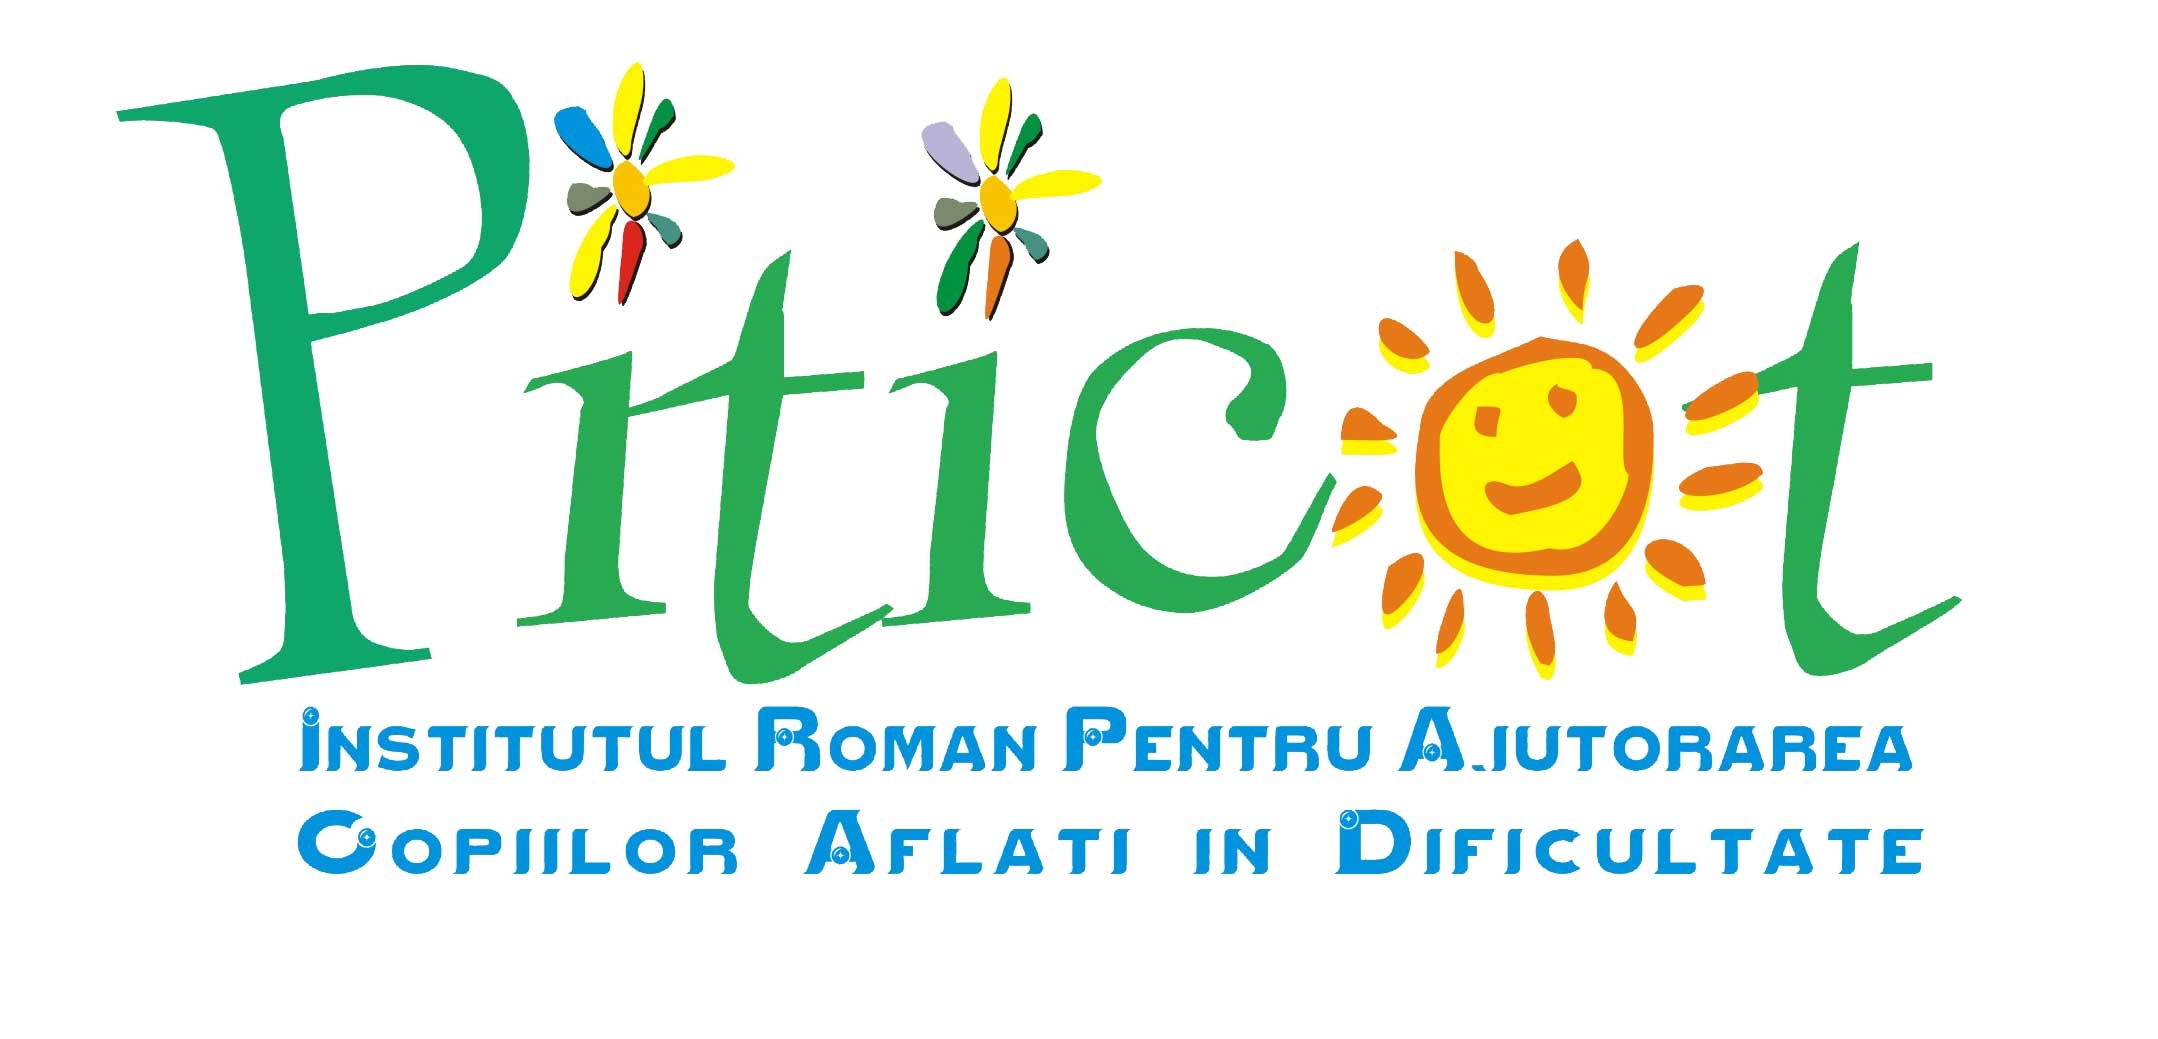 Asociatia Institutul Roman pentru Ajutorarea Copiilor Aflati in Dificultate "Piticot" logo